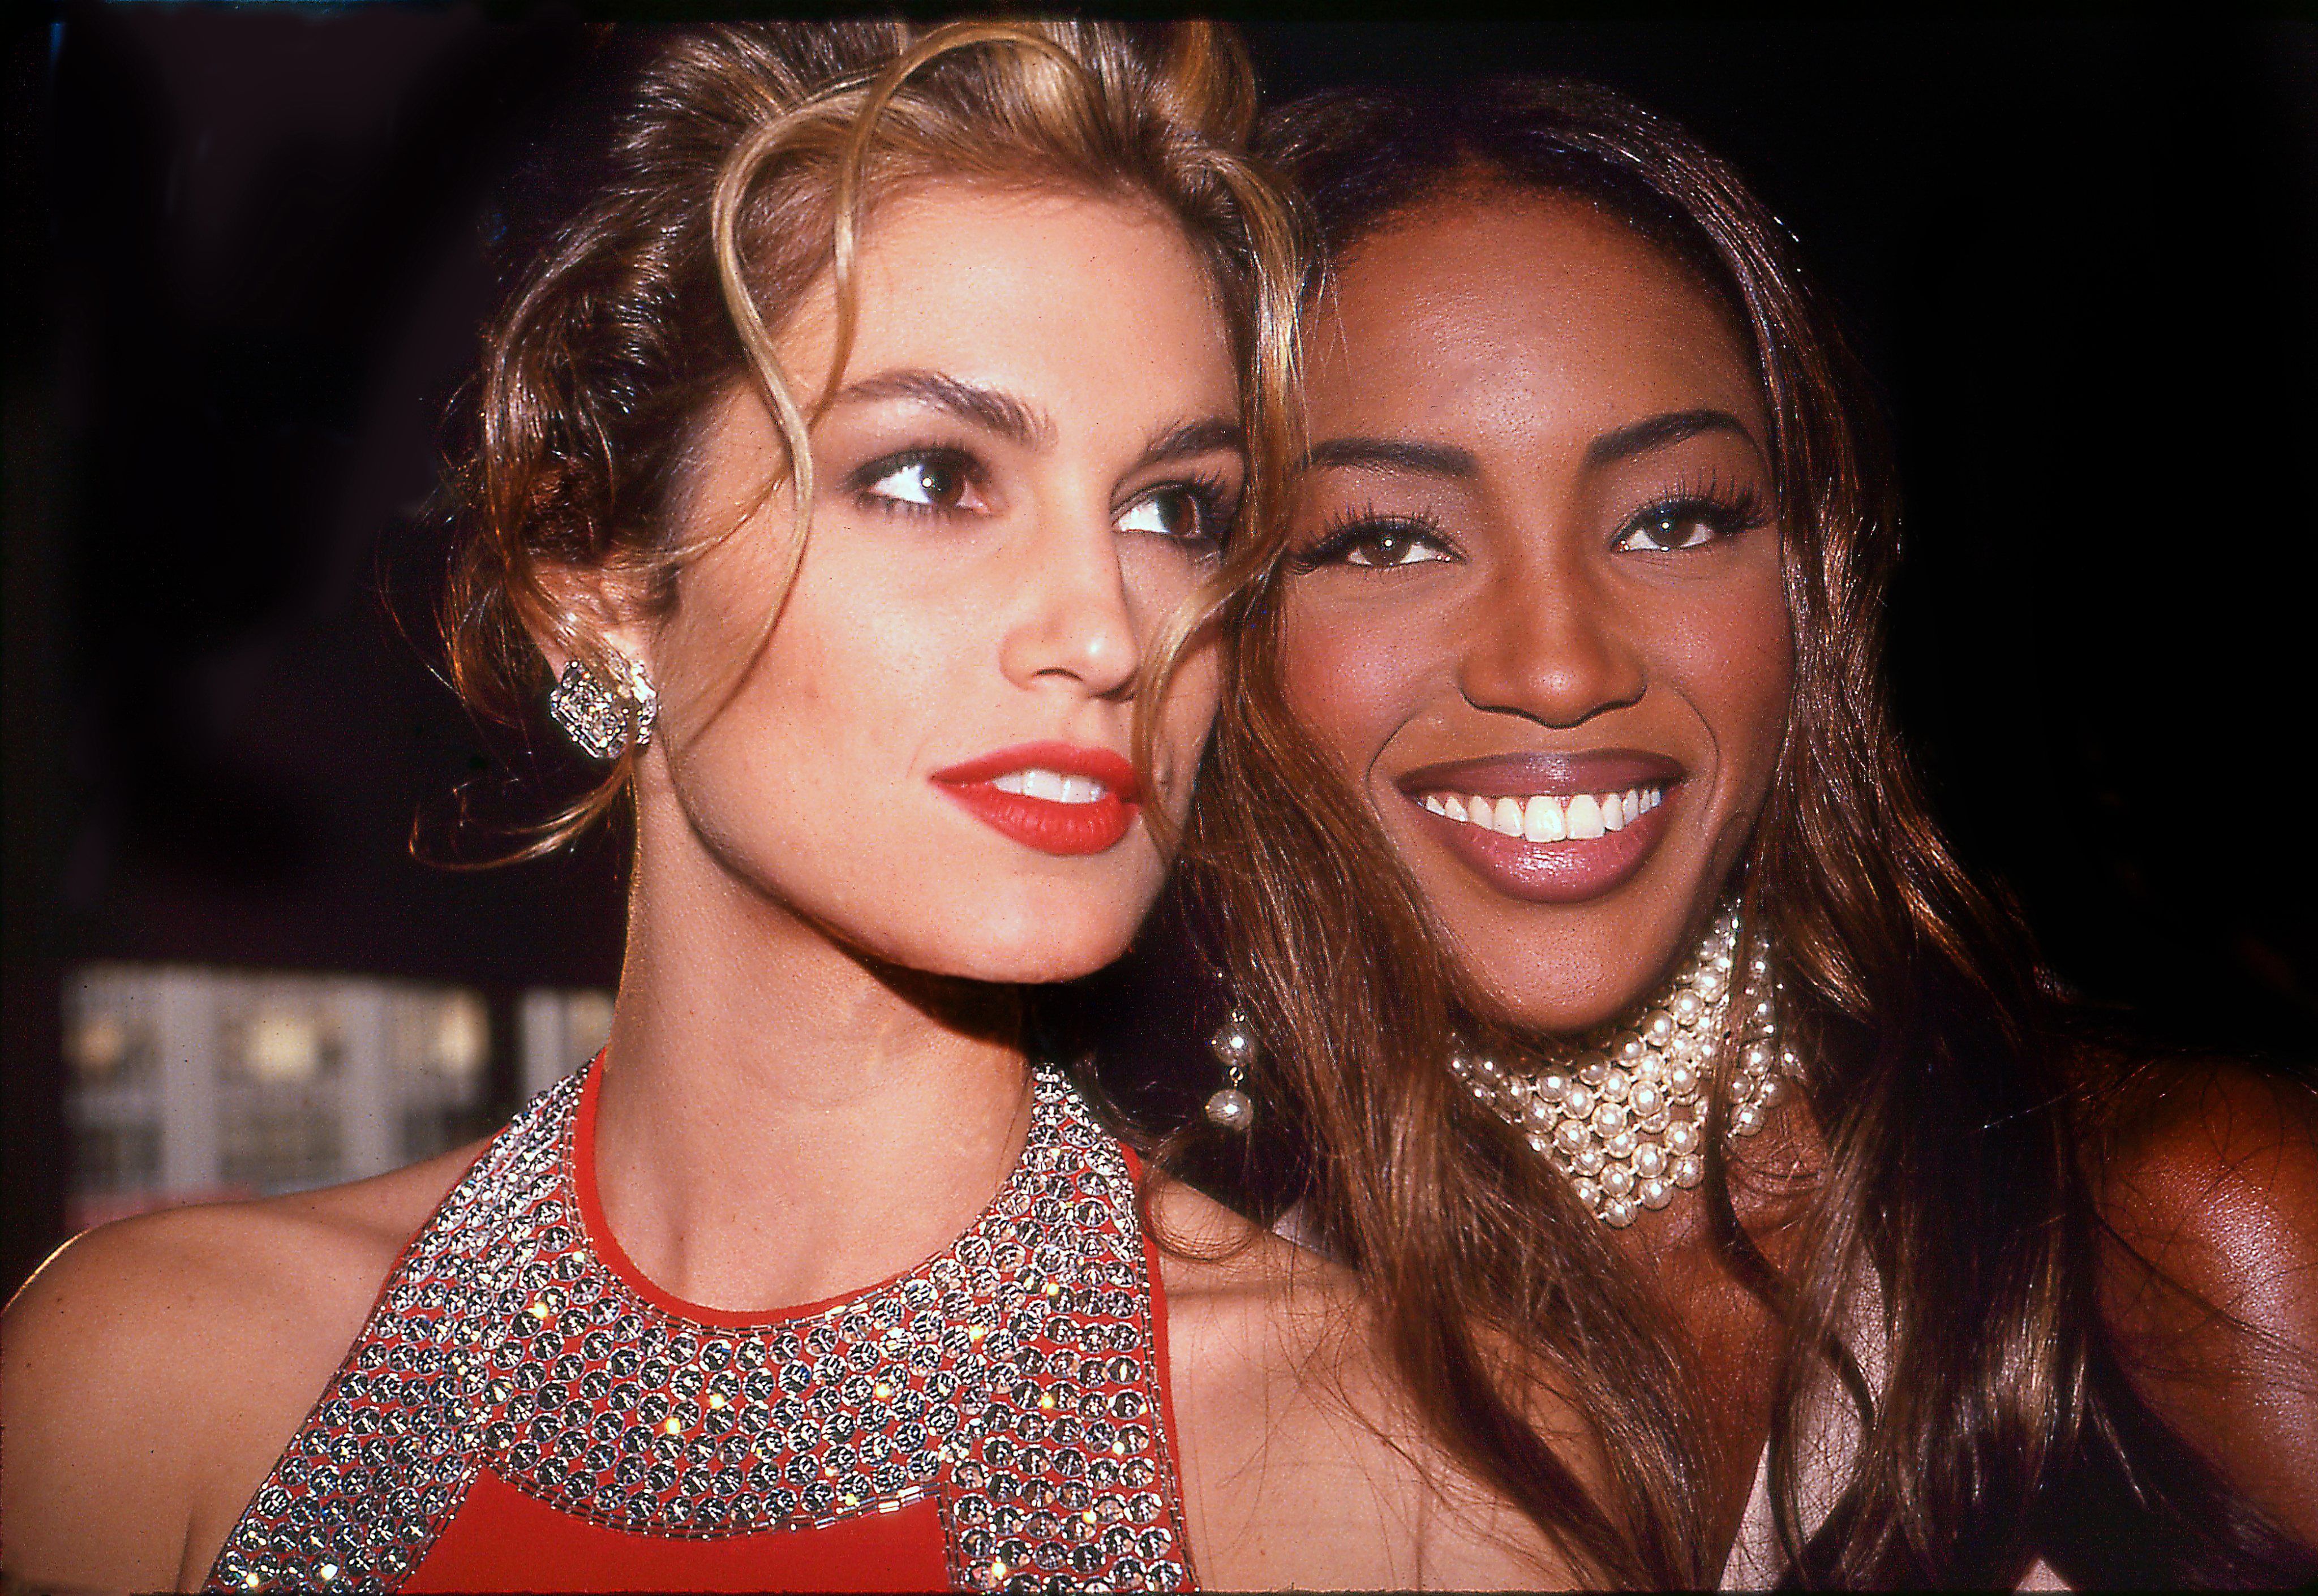 As modelos Cindy Crawford e Naomi Campbell numa festa privada em Nova Iorque